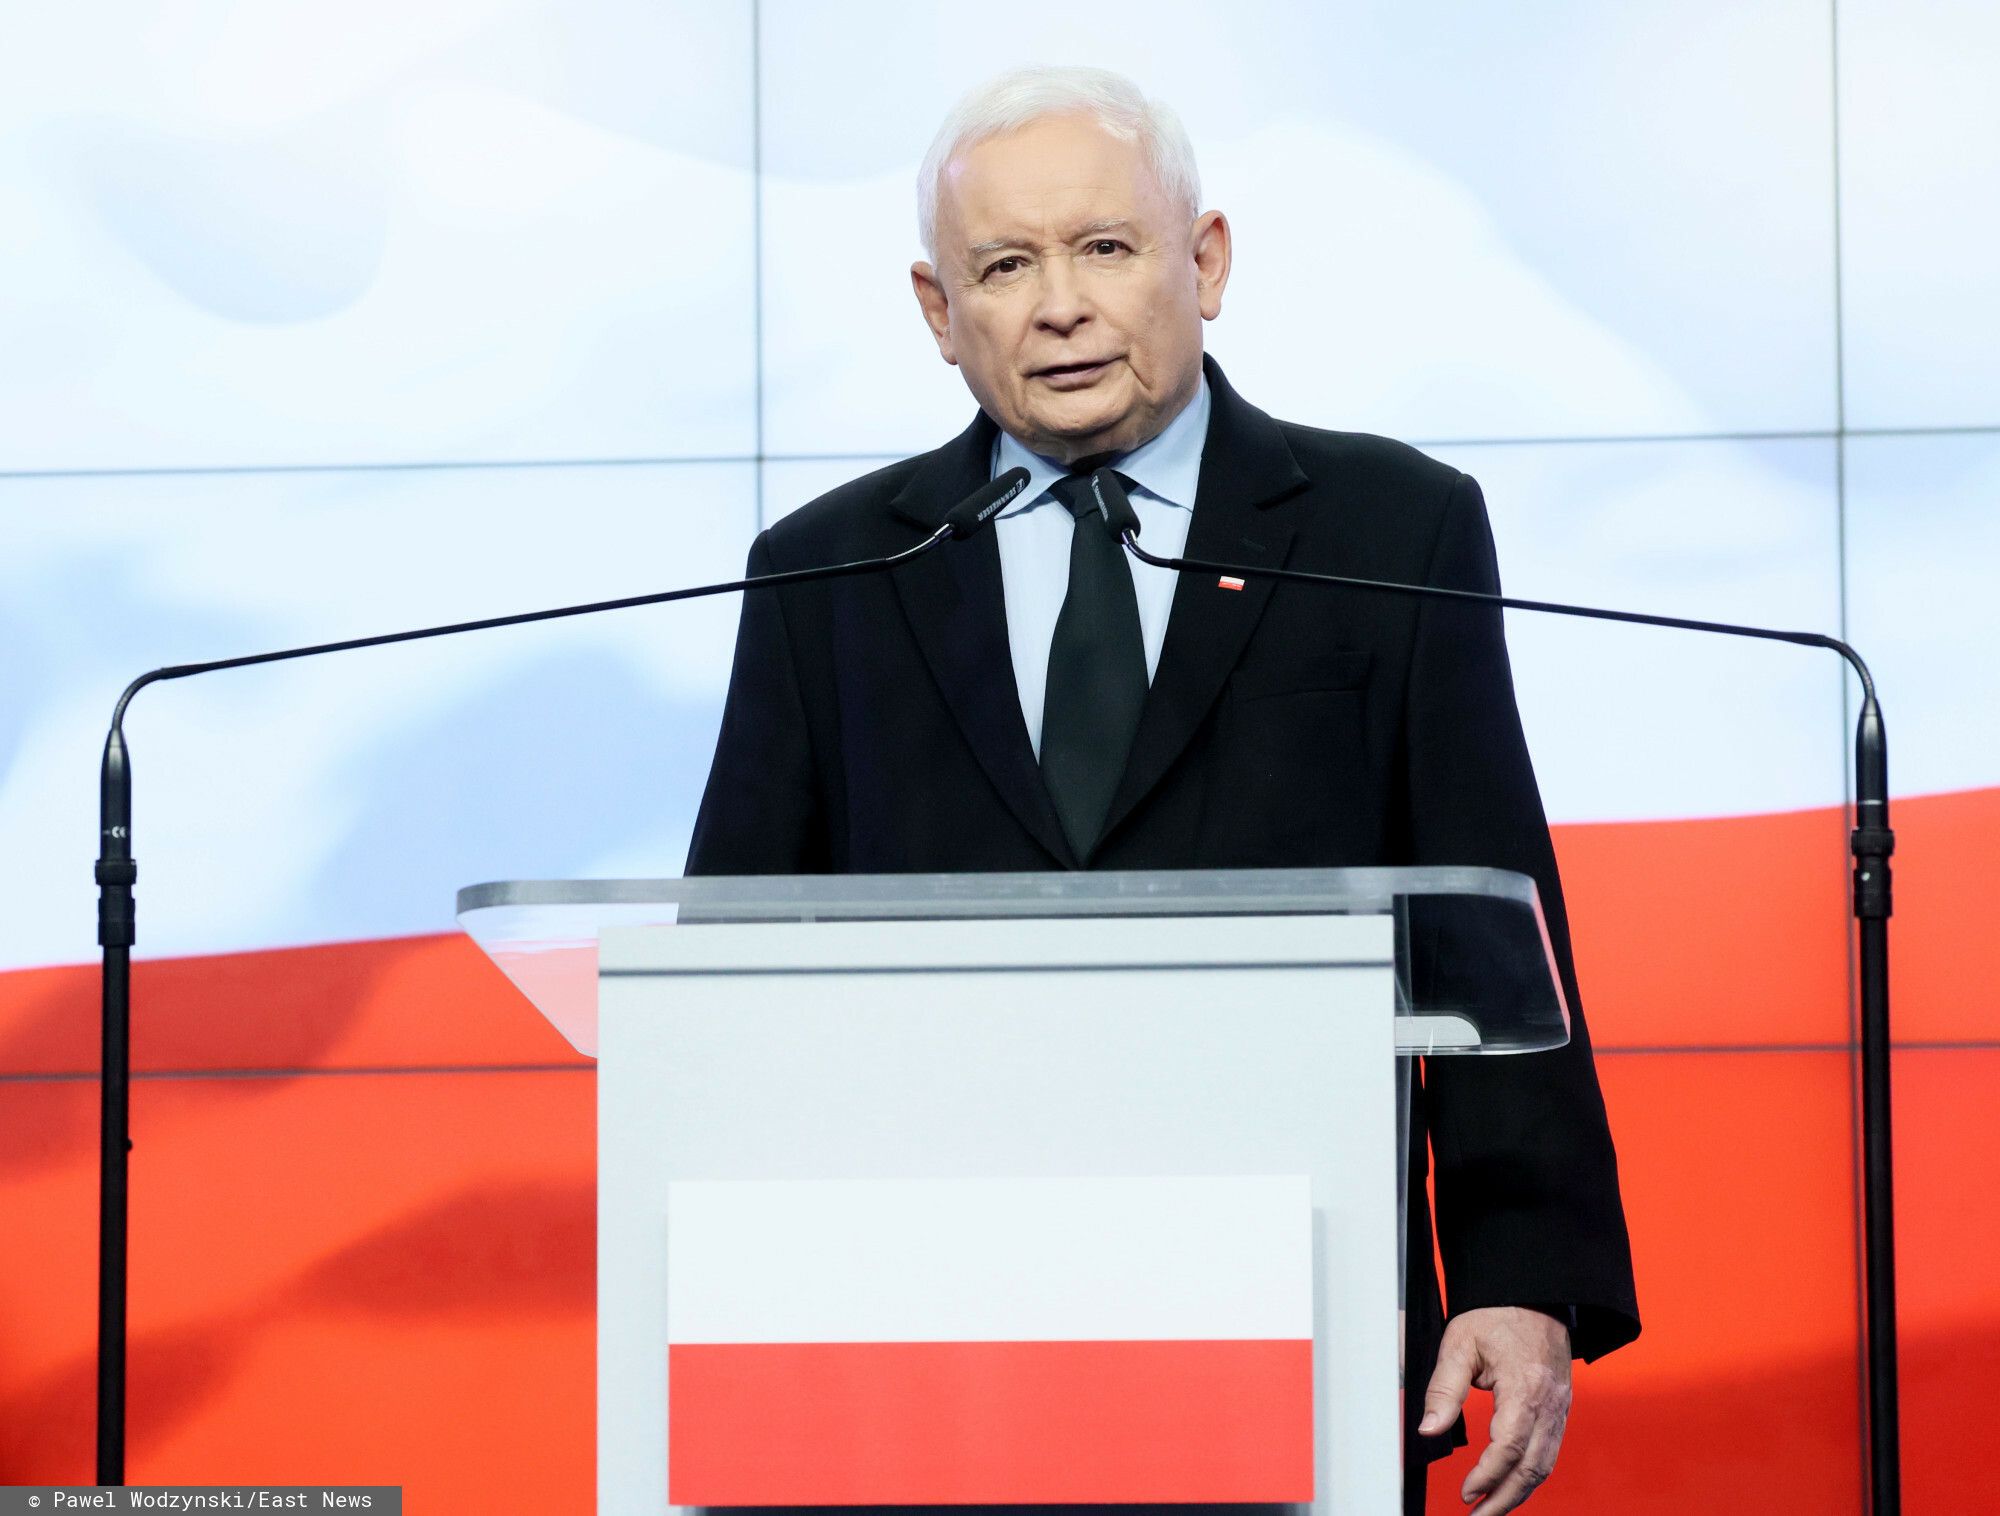 Szok, co ujawniono o wykształceniu Jarosława Kaczyńskiego 1.jpg